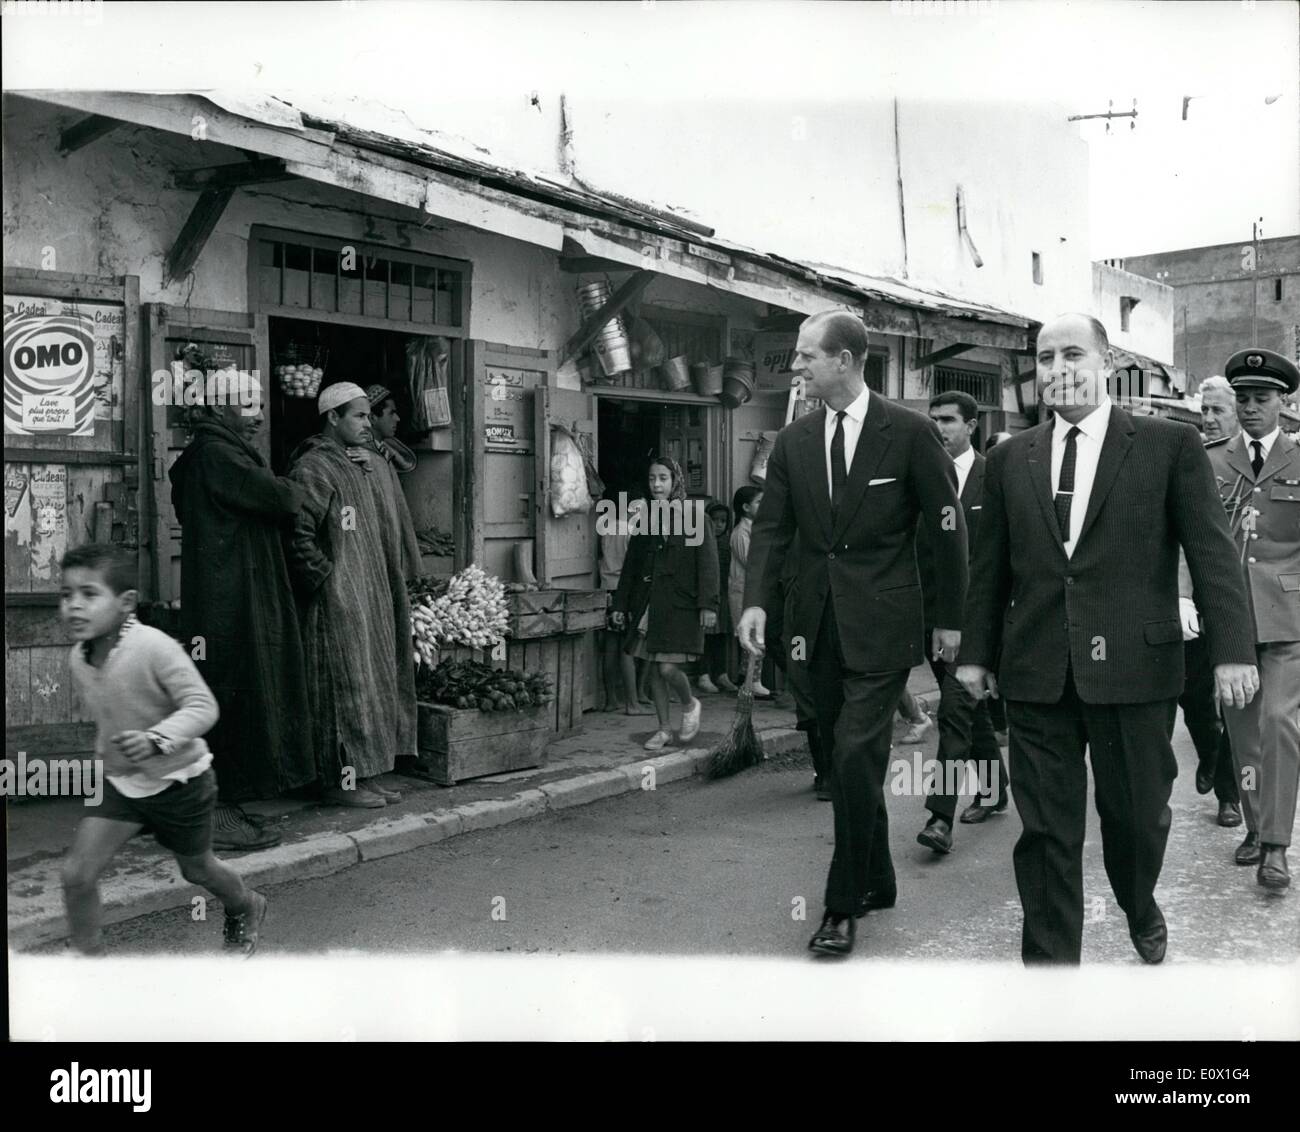 12 déc., 1964 - Le Prince Philippe en visite officielle à l'Morcco. Sur la photo, accompagné de fonctionnaires du Prince Philip de promenades à travers le marché de la Médina de Rabat au cours de sa visite officielle de quatre jours au Maroc. Banque D'Images